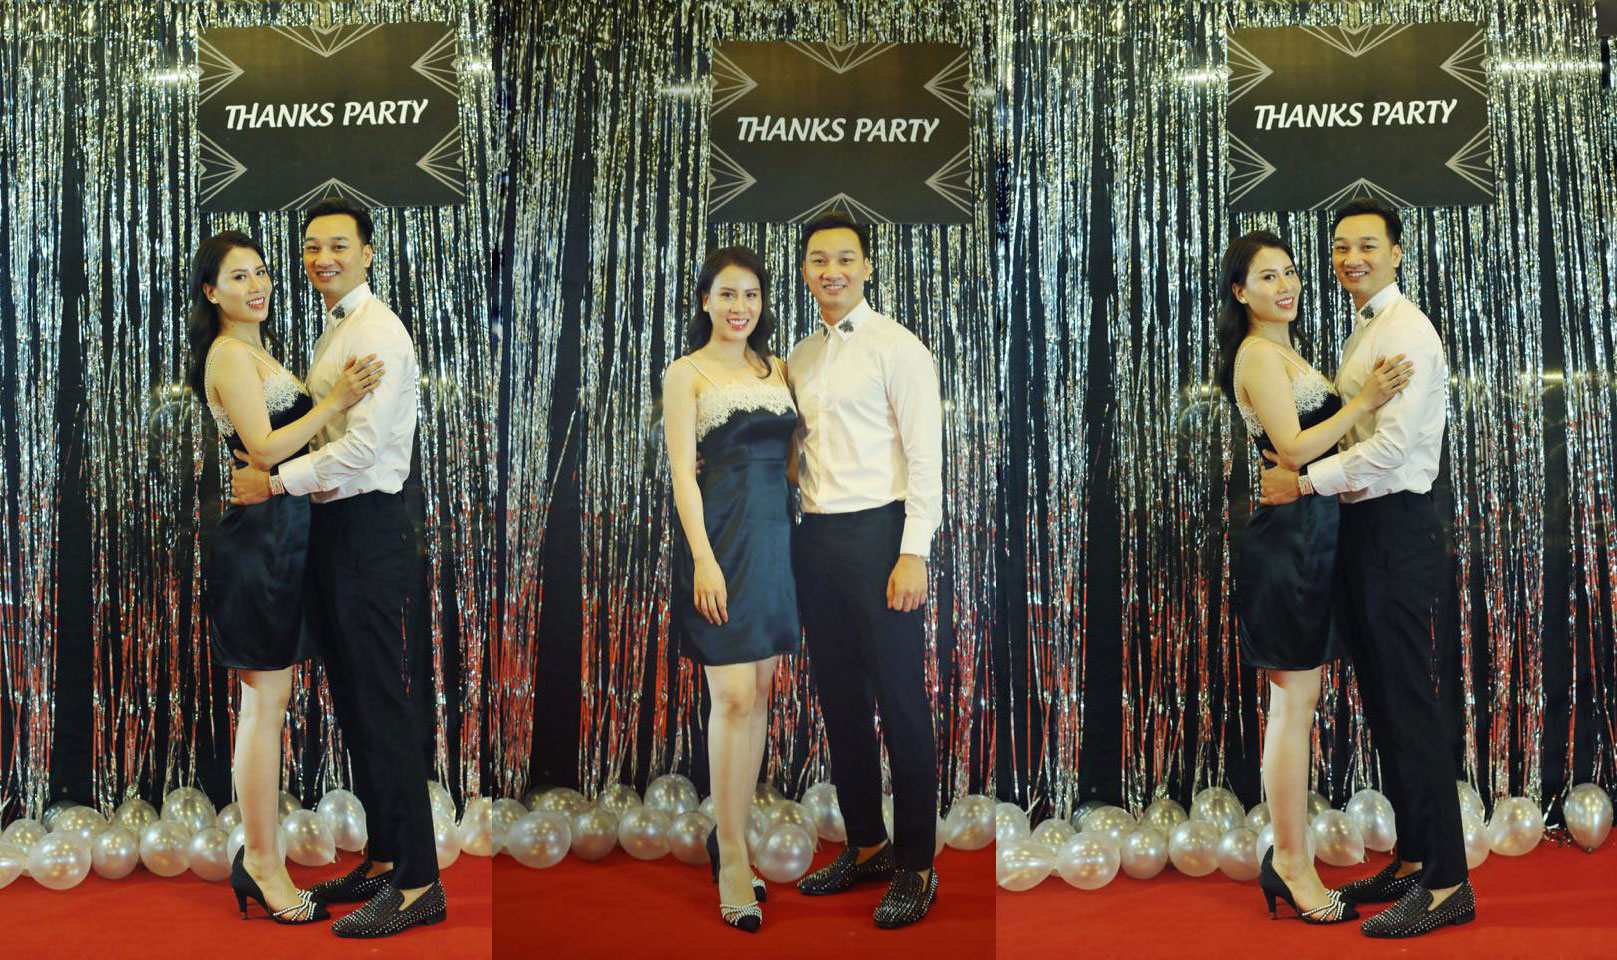 Kỉ niệm 4 năm ngày cưới, MC Thành Trung và bà xã Ngọc Hương thể hiện tình cảm ngọt ngào trên trang cá nhân 